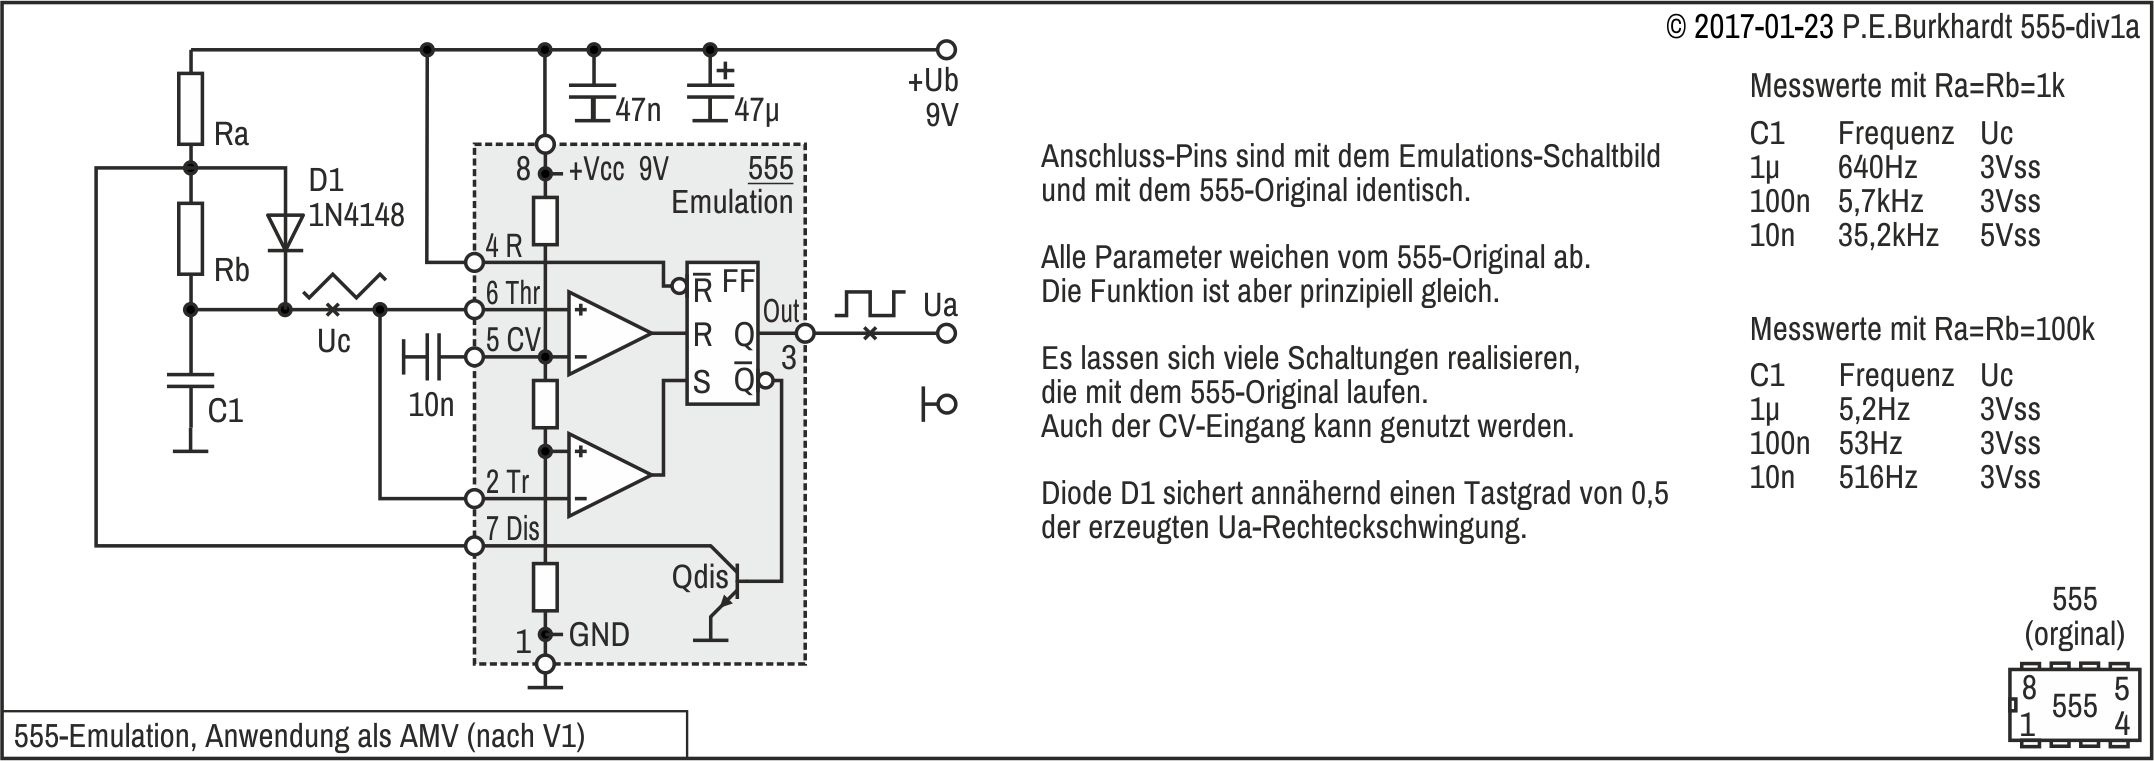 555-Emulation mit 12 Transistoren, AMV